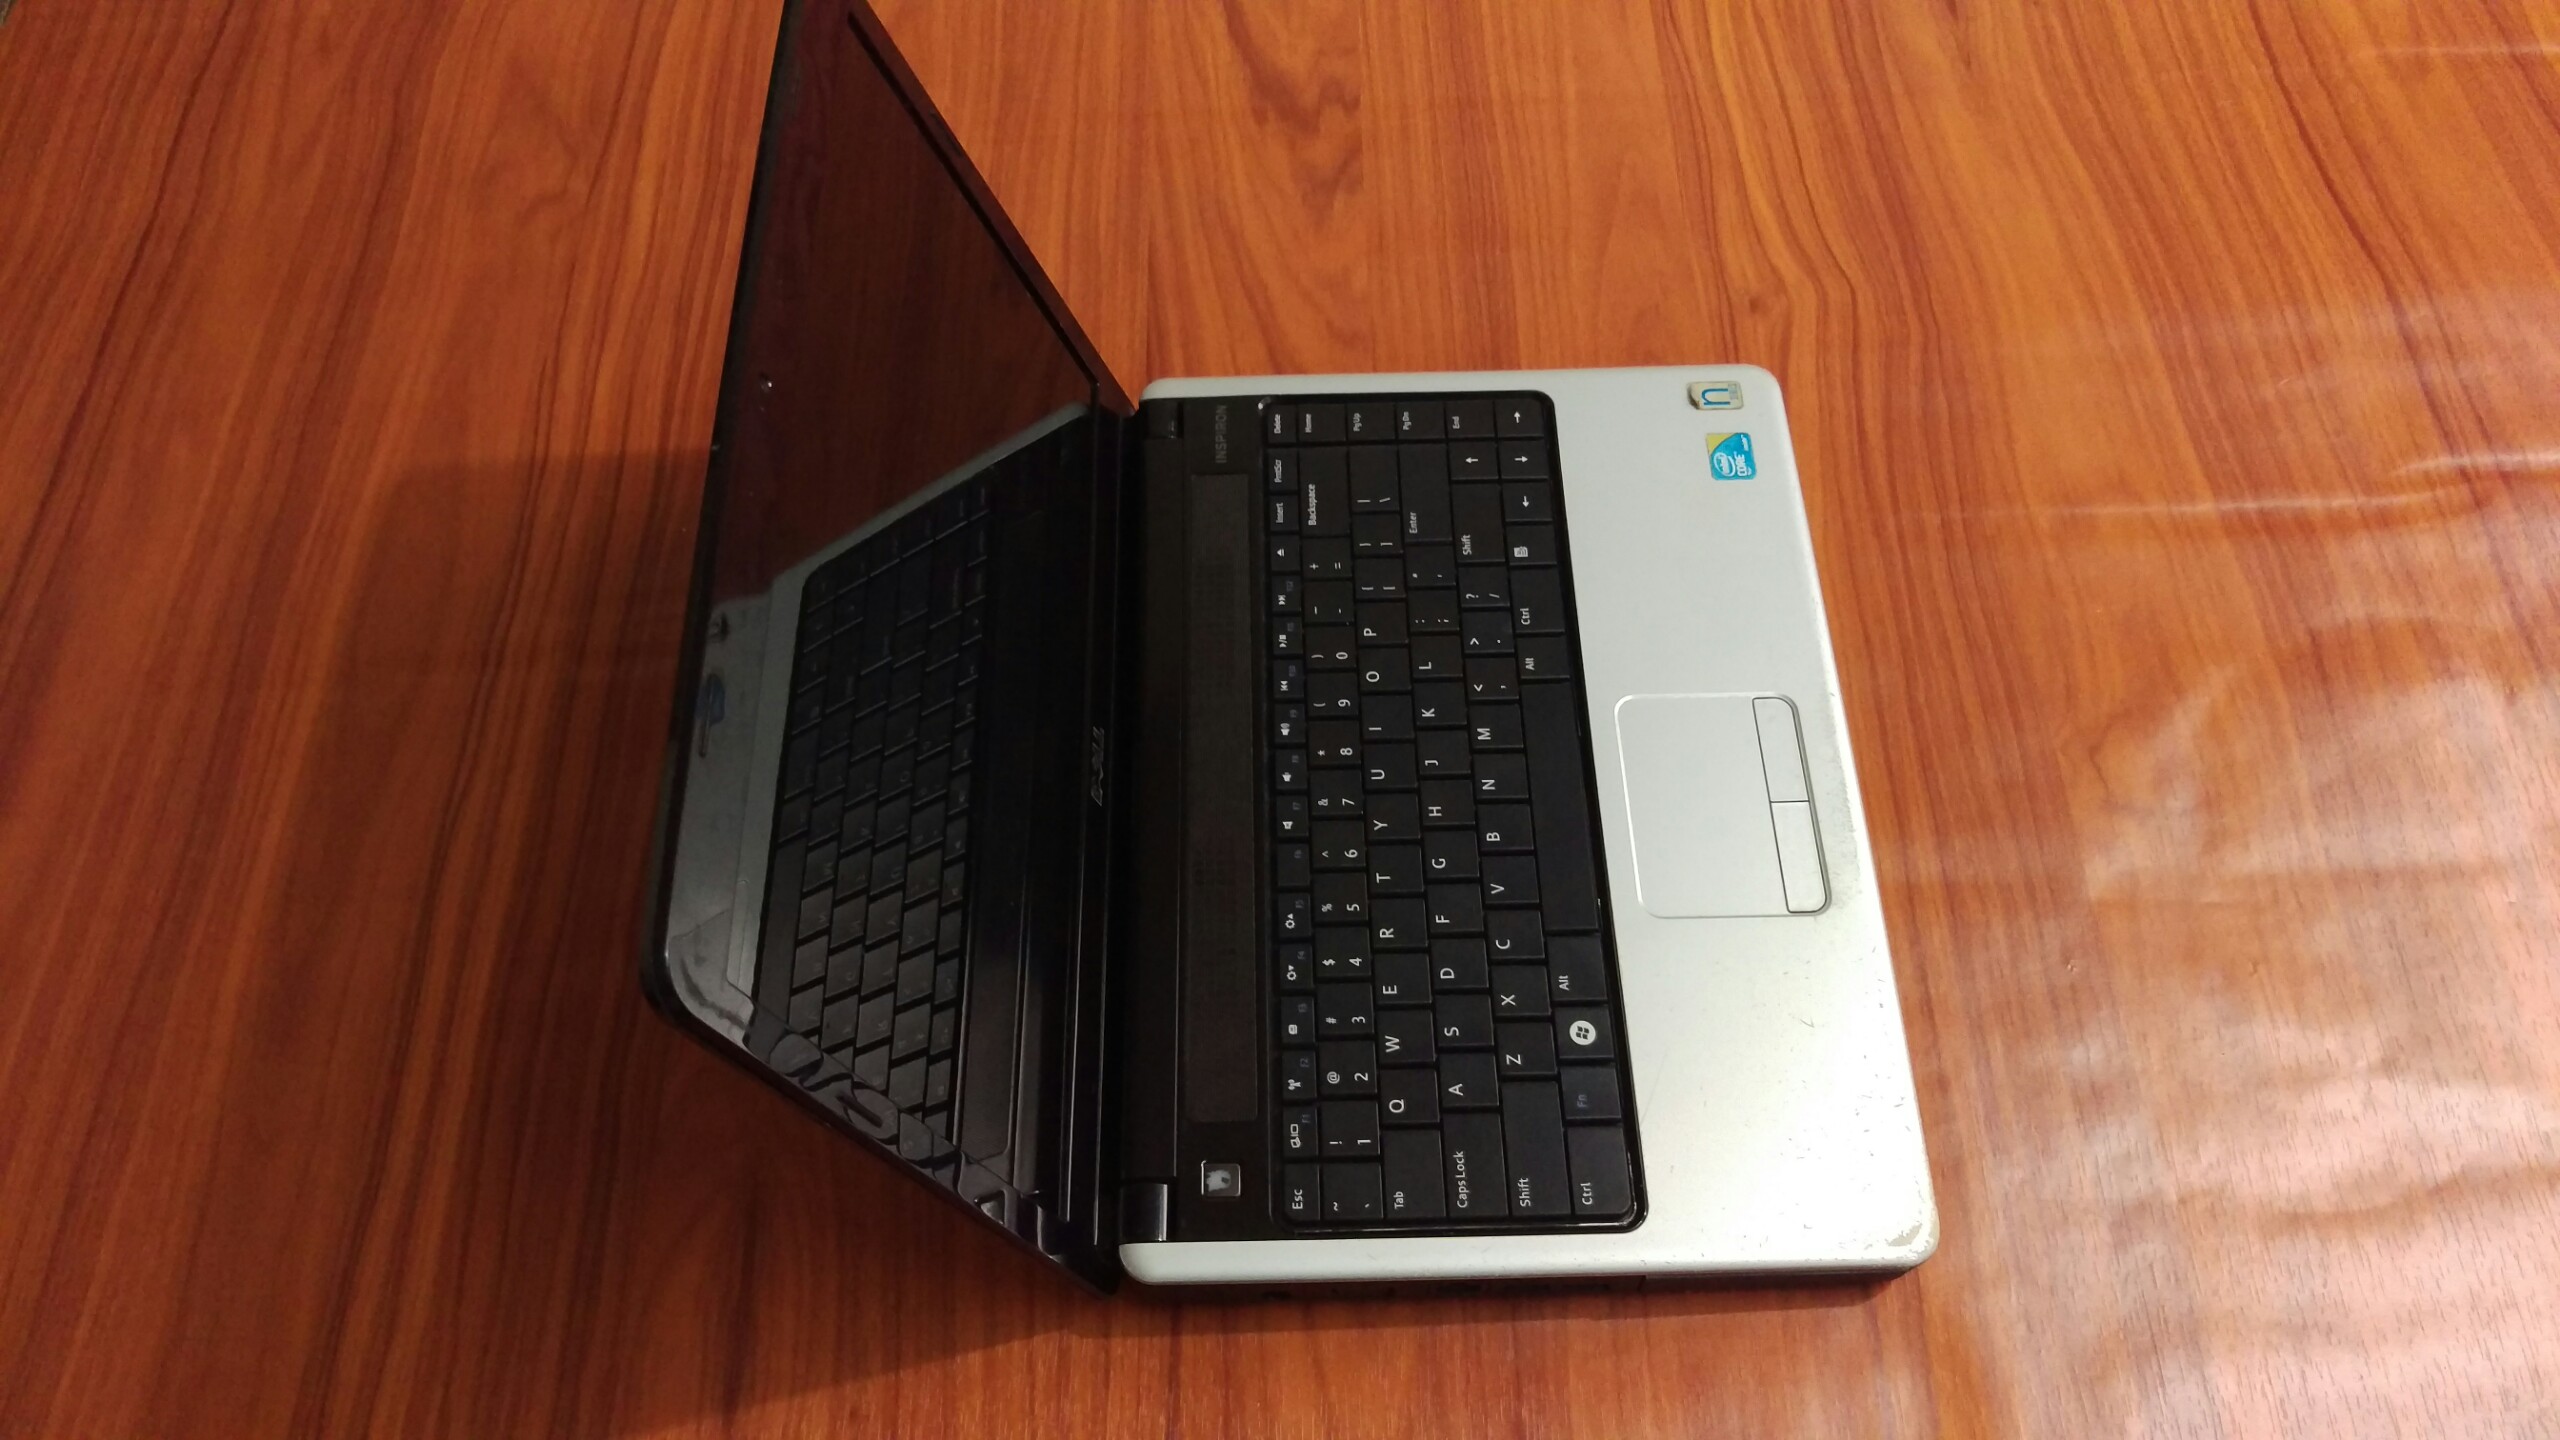 Laptop Dell thời trang, xung nhịp 2.2Ghz, cấu hình tốt giá cạnh tranh, ram 4G , Ổ HDD 320G nhanh mượt, màn hình 14 inch, phù hợp dùng làm việc, học tập, giải trí, tặng chuột không dây